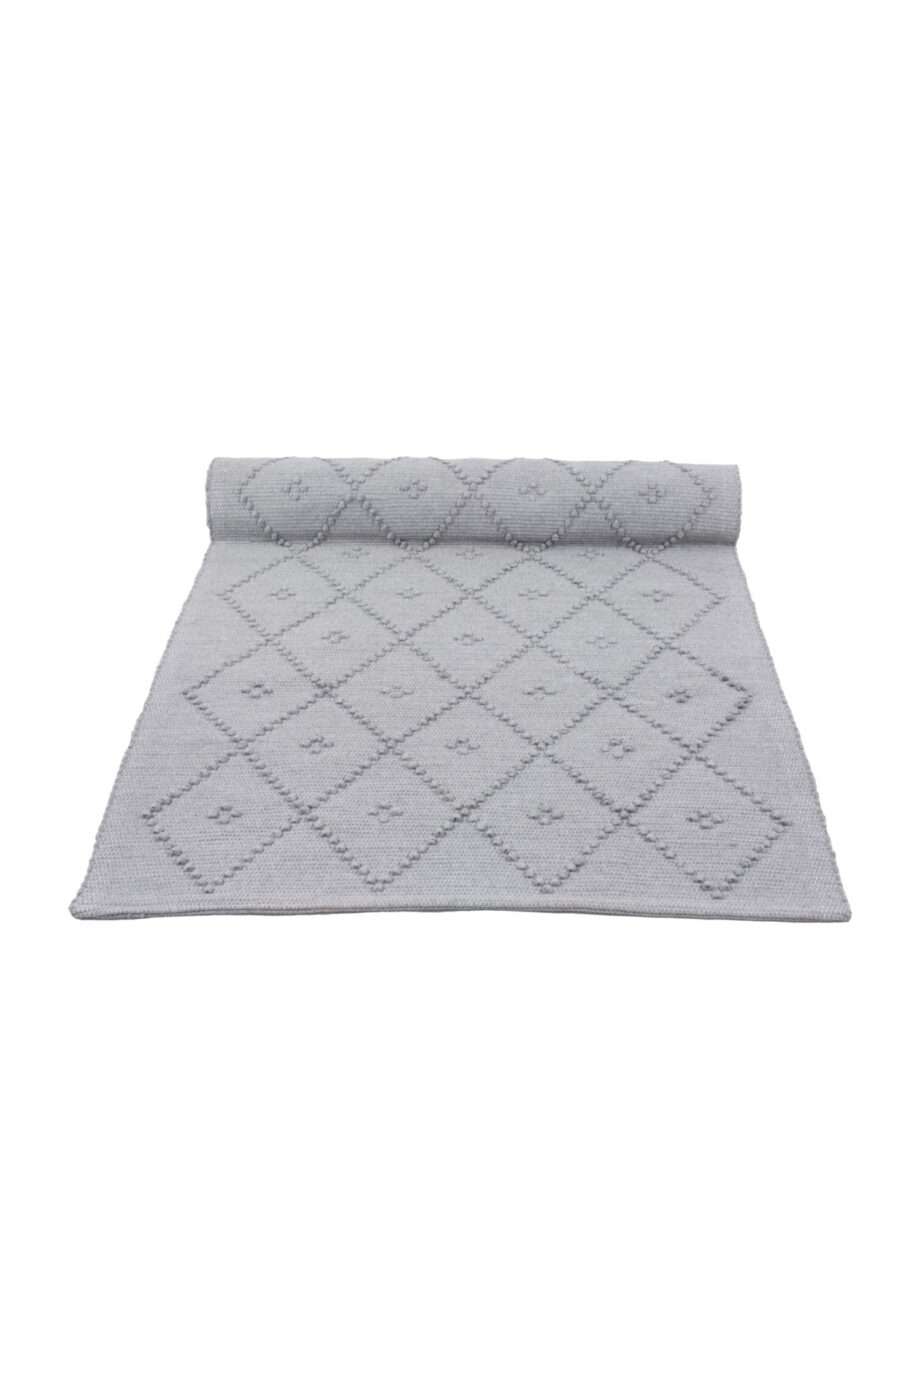 diamond light grey woven cotton floor mat xsmall